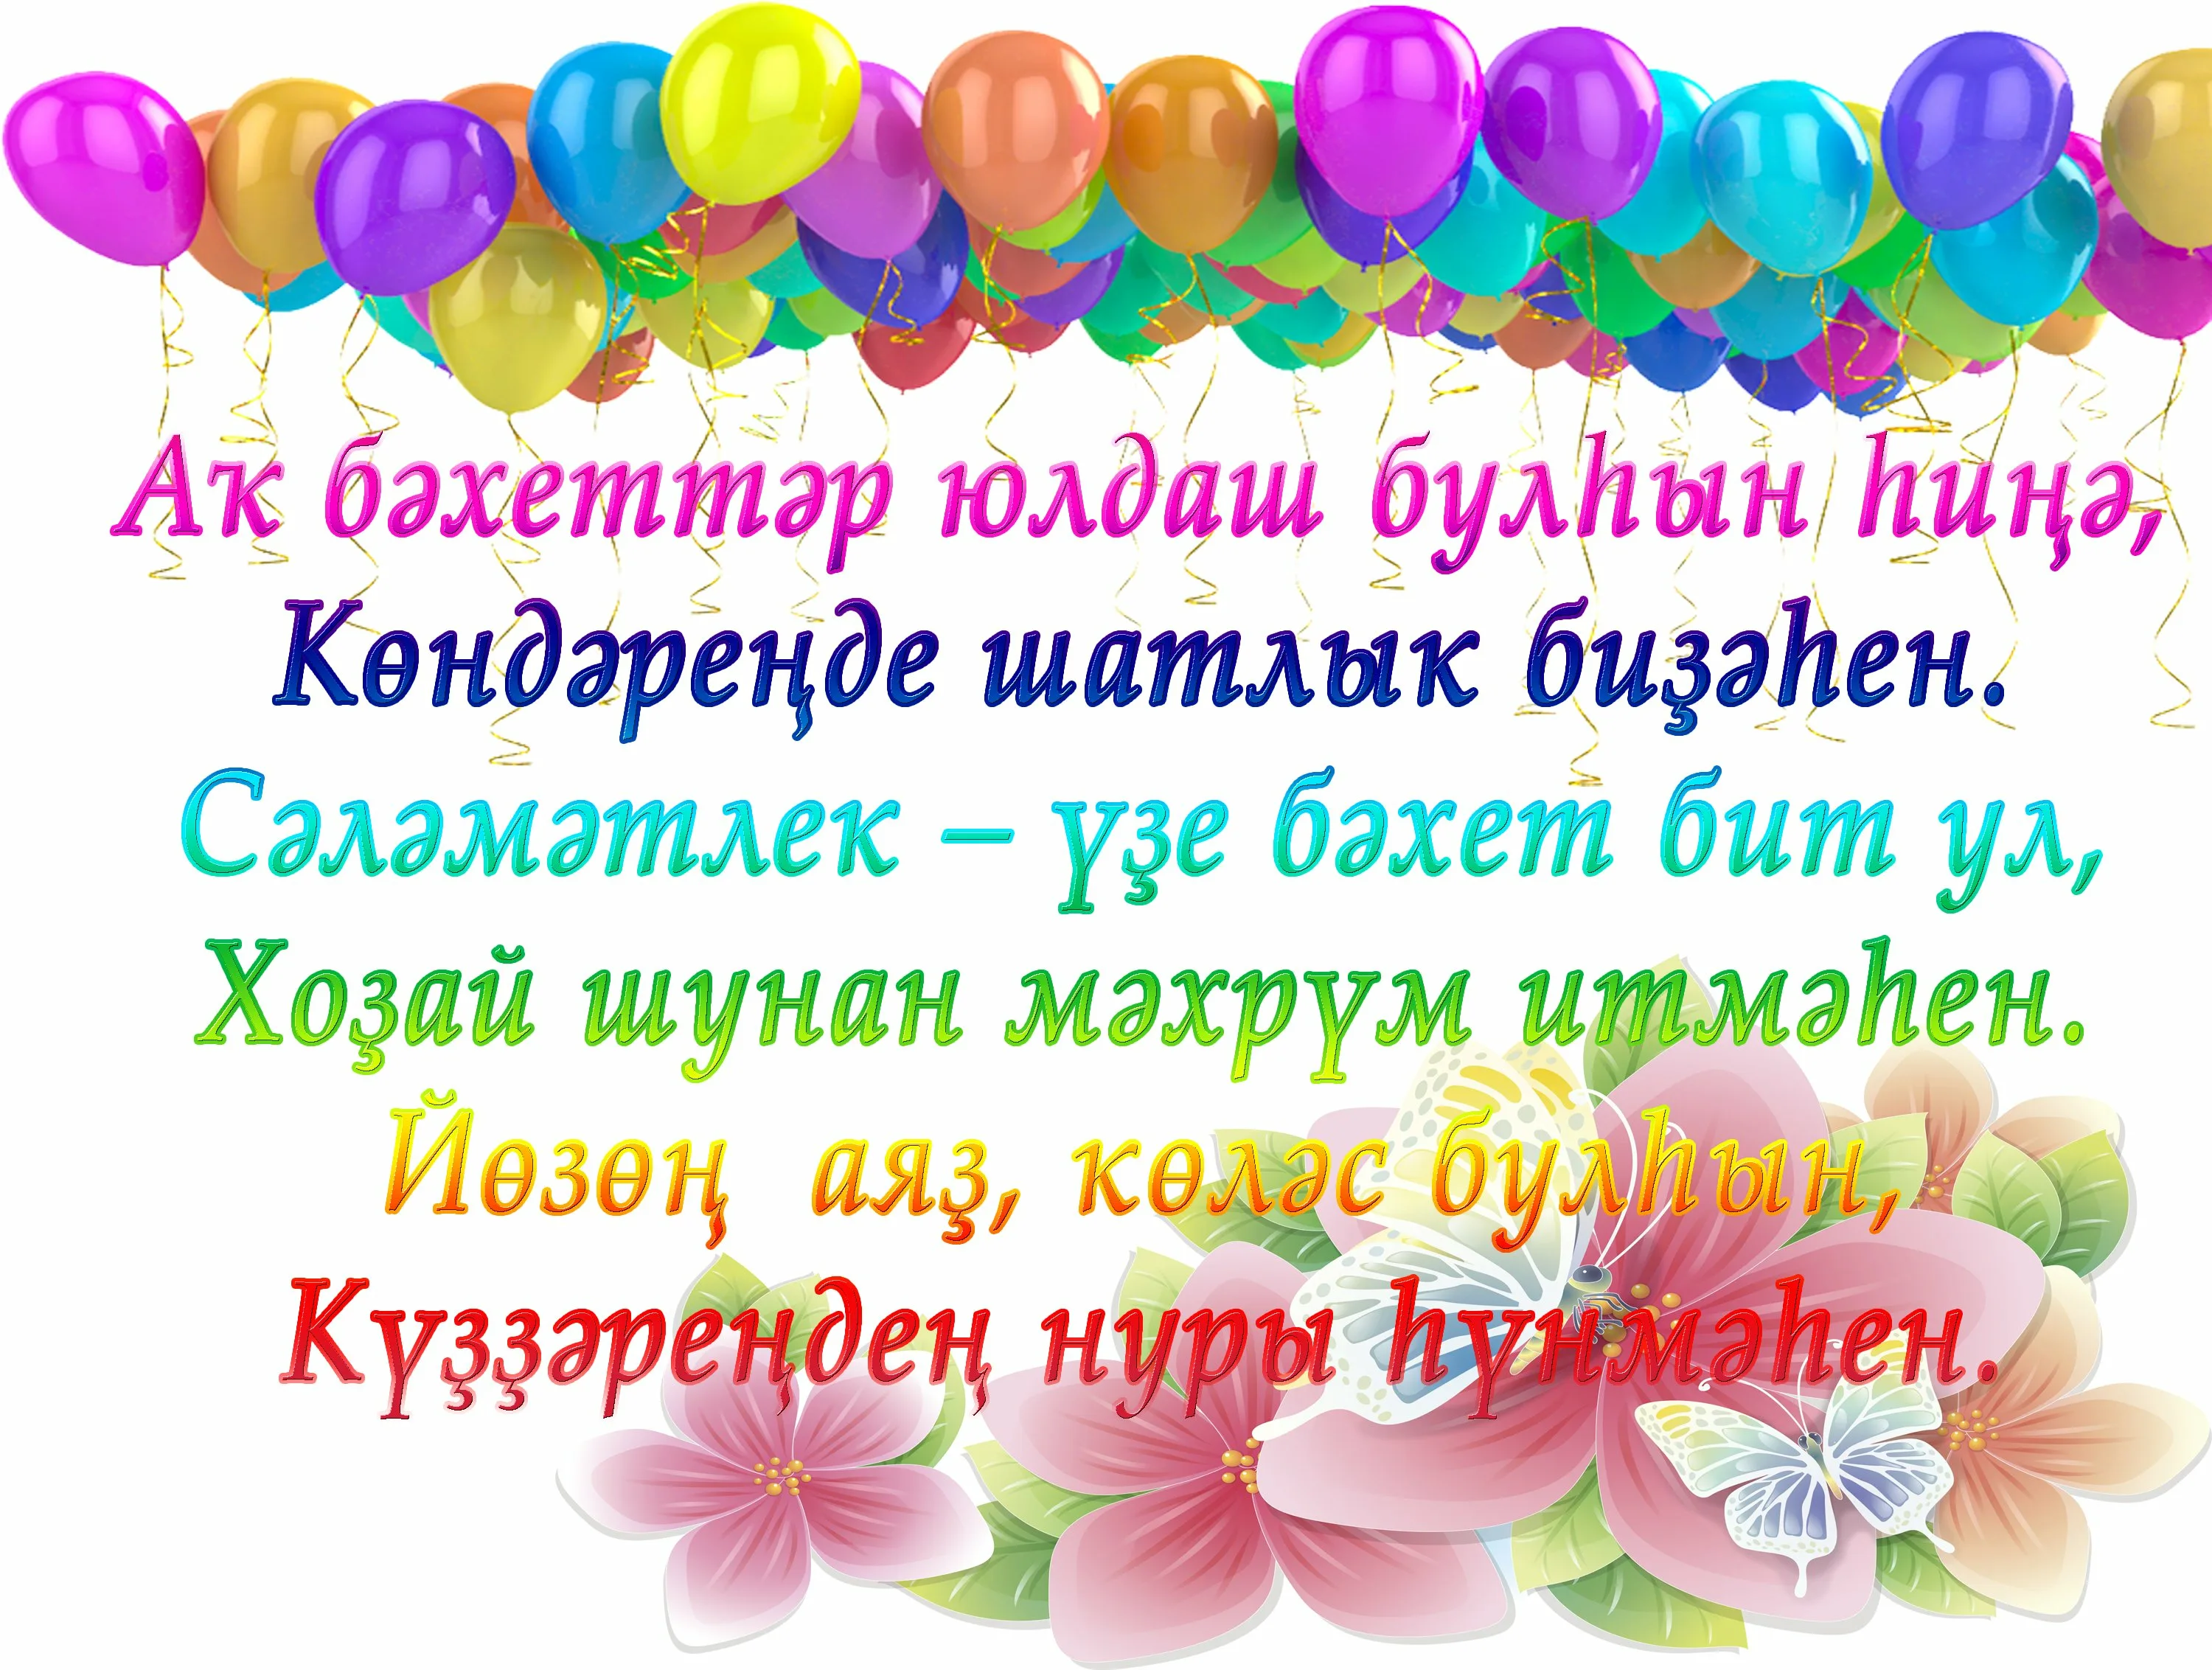 Поздравления с днём рождения на башкирском. Поздравления с днём рождения на башкирском языке. Поздравления с днём на башкирском языке. Поздравление с юбилеем на башкирском языке.